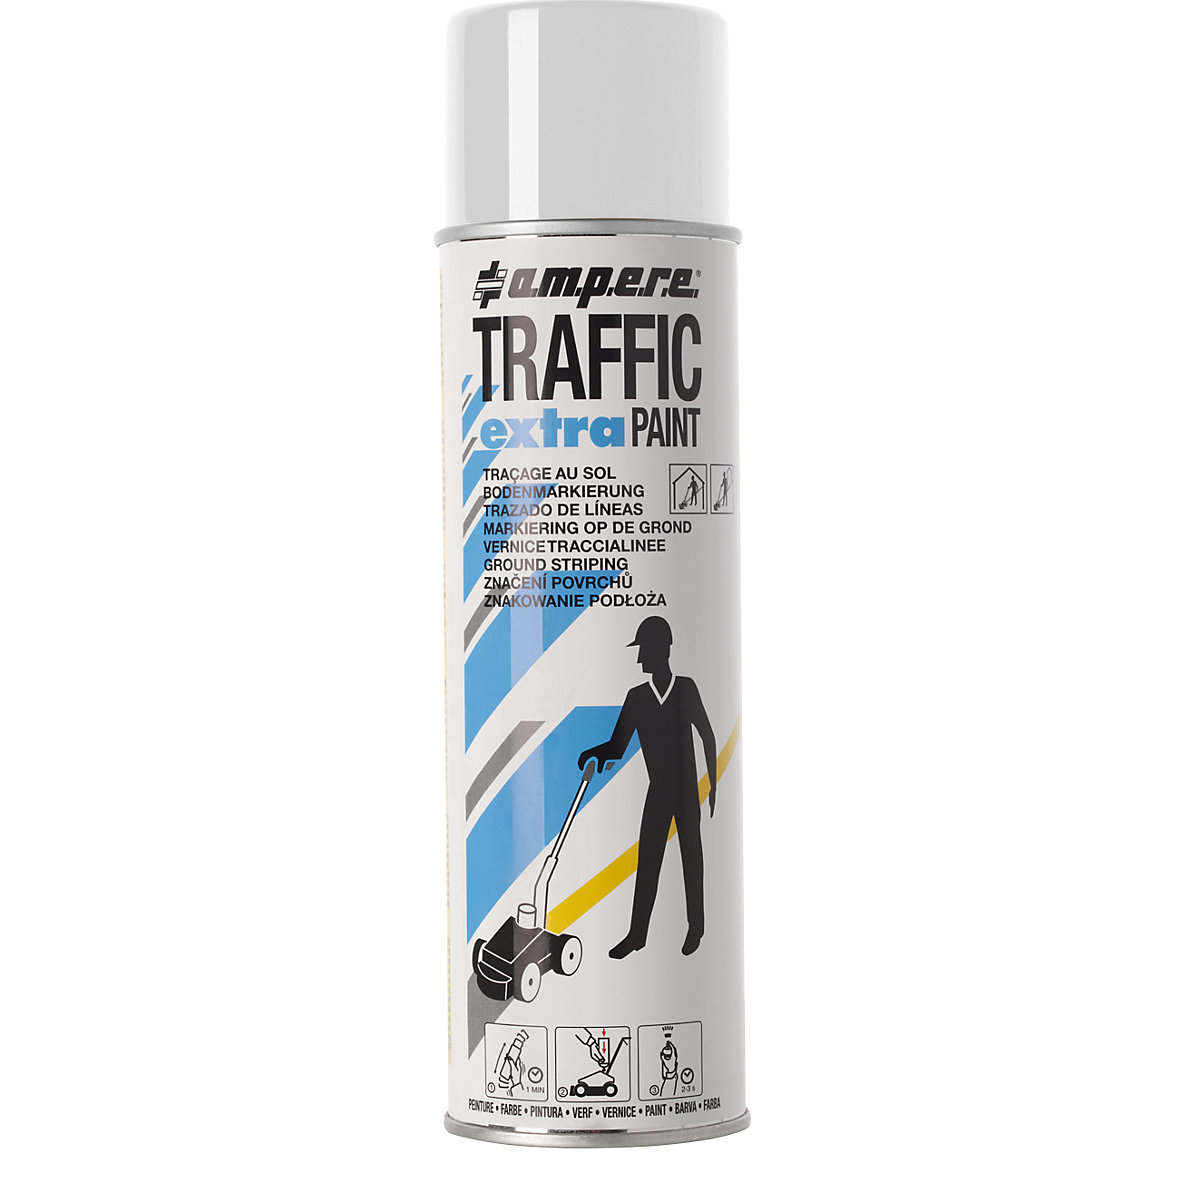 Markierfarbe Traffic extra Paint® für starke Beanspruchung Ampere